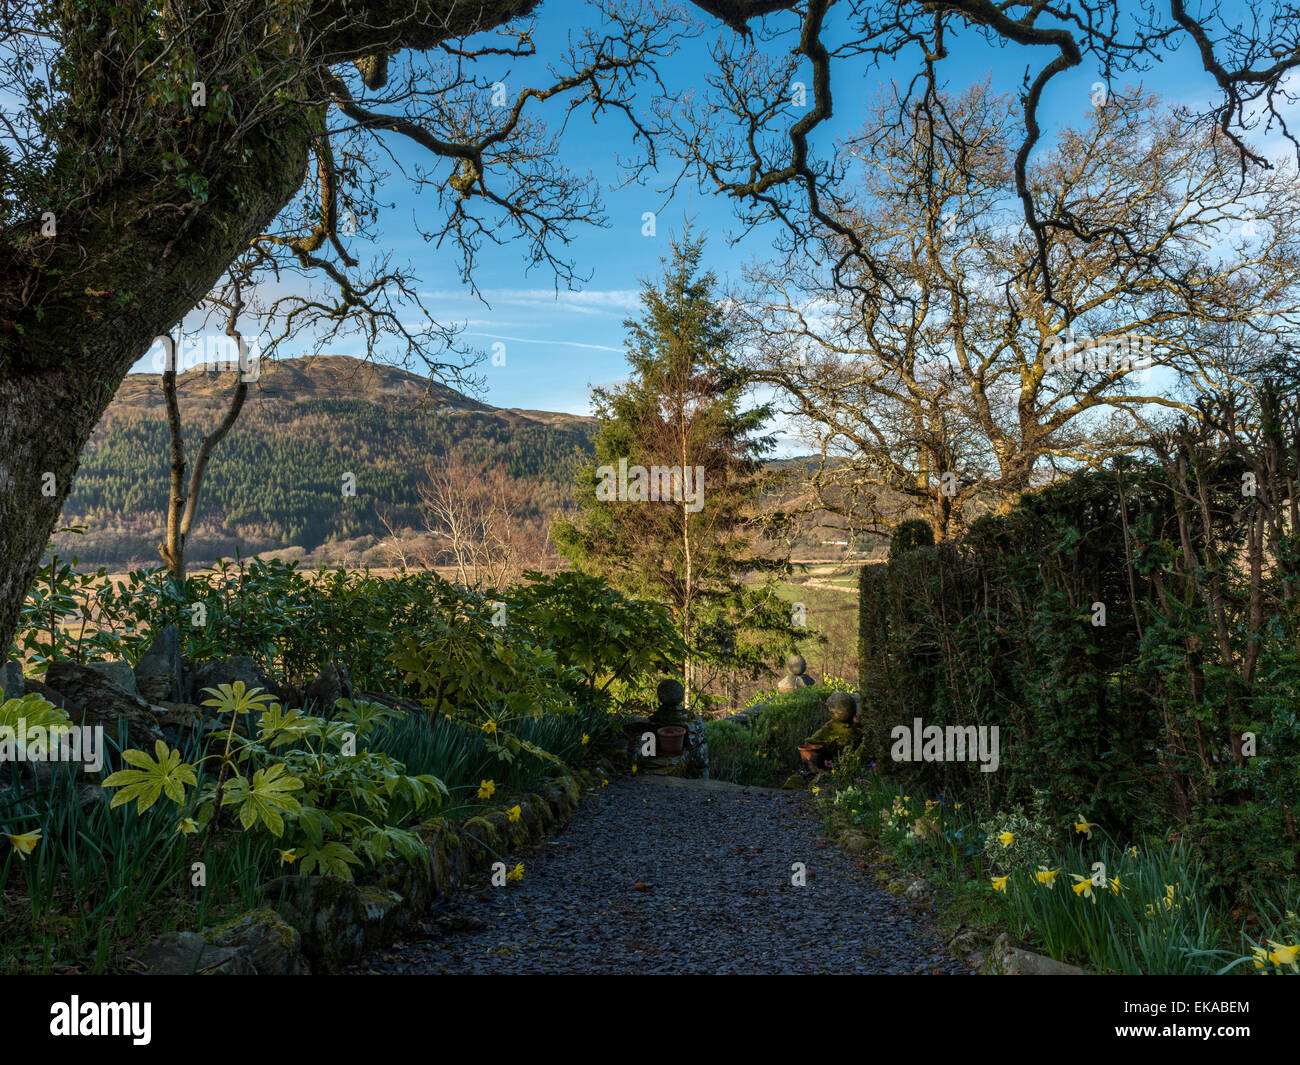 Paysage gallois, représentant de la jonquille de printemps en fleurs, en bordure d'un sentier de gravier avec une forêt et campagne vista. Banque D'Images